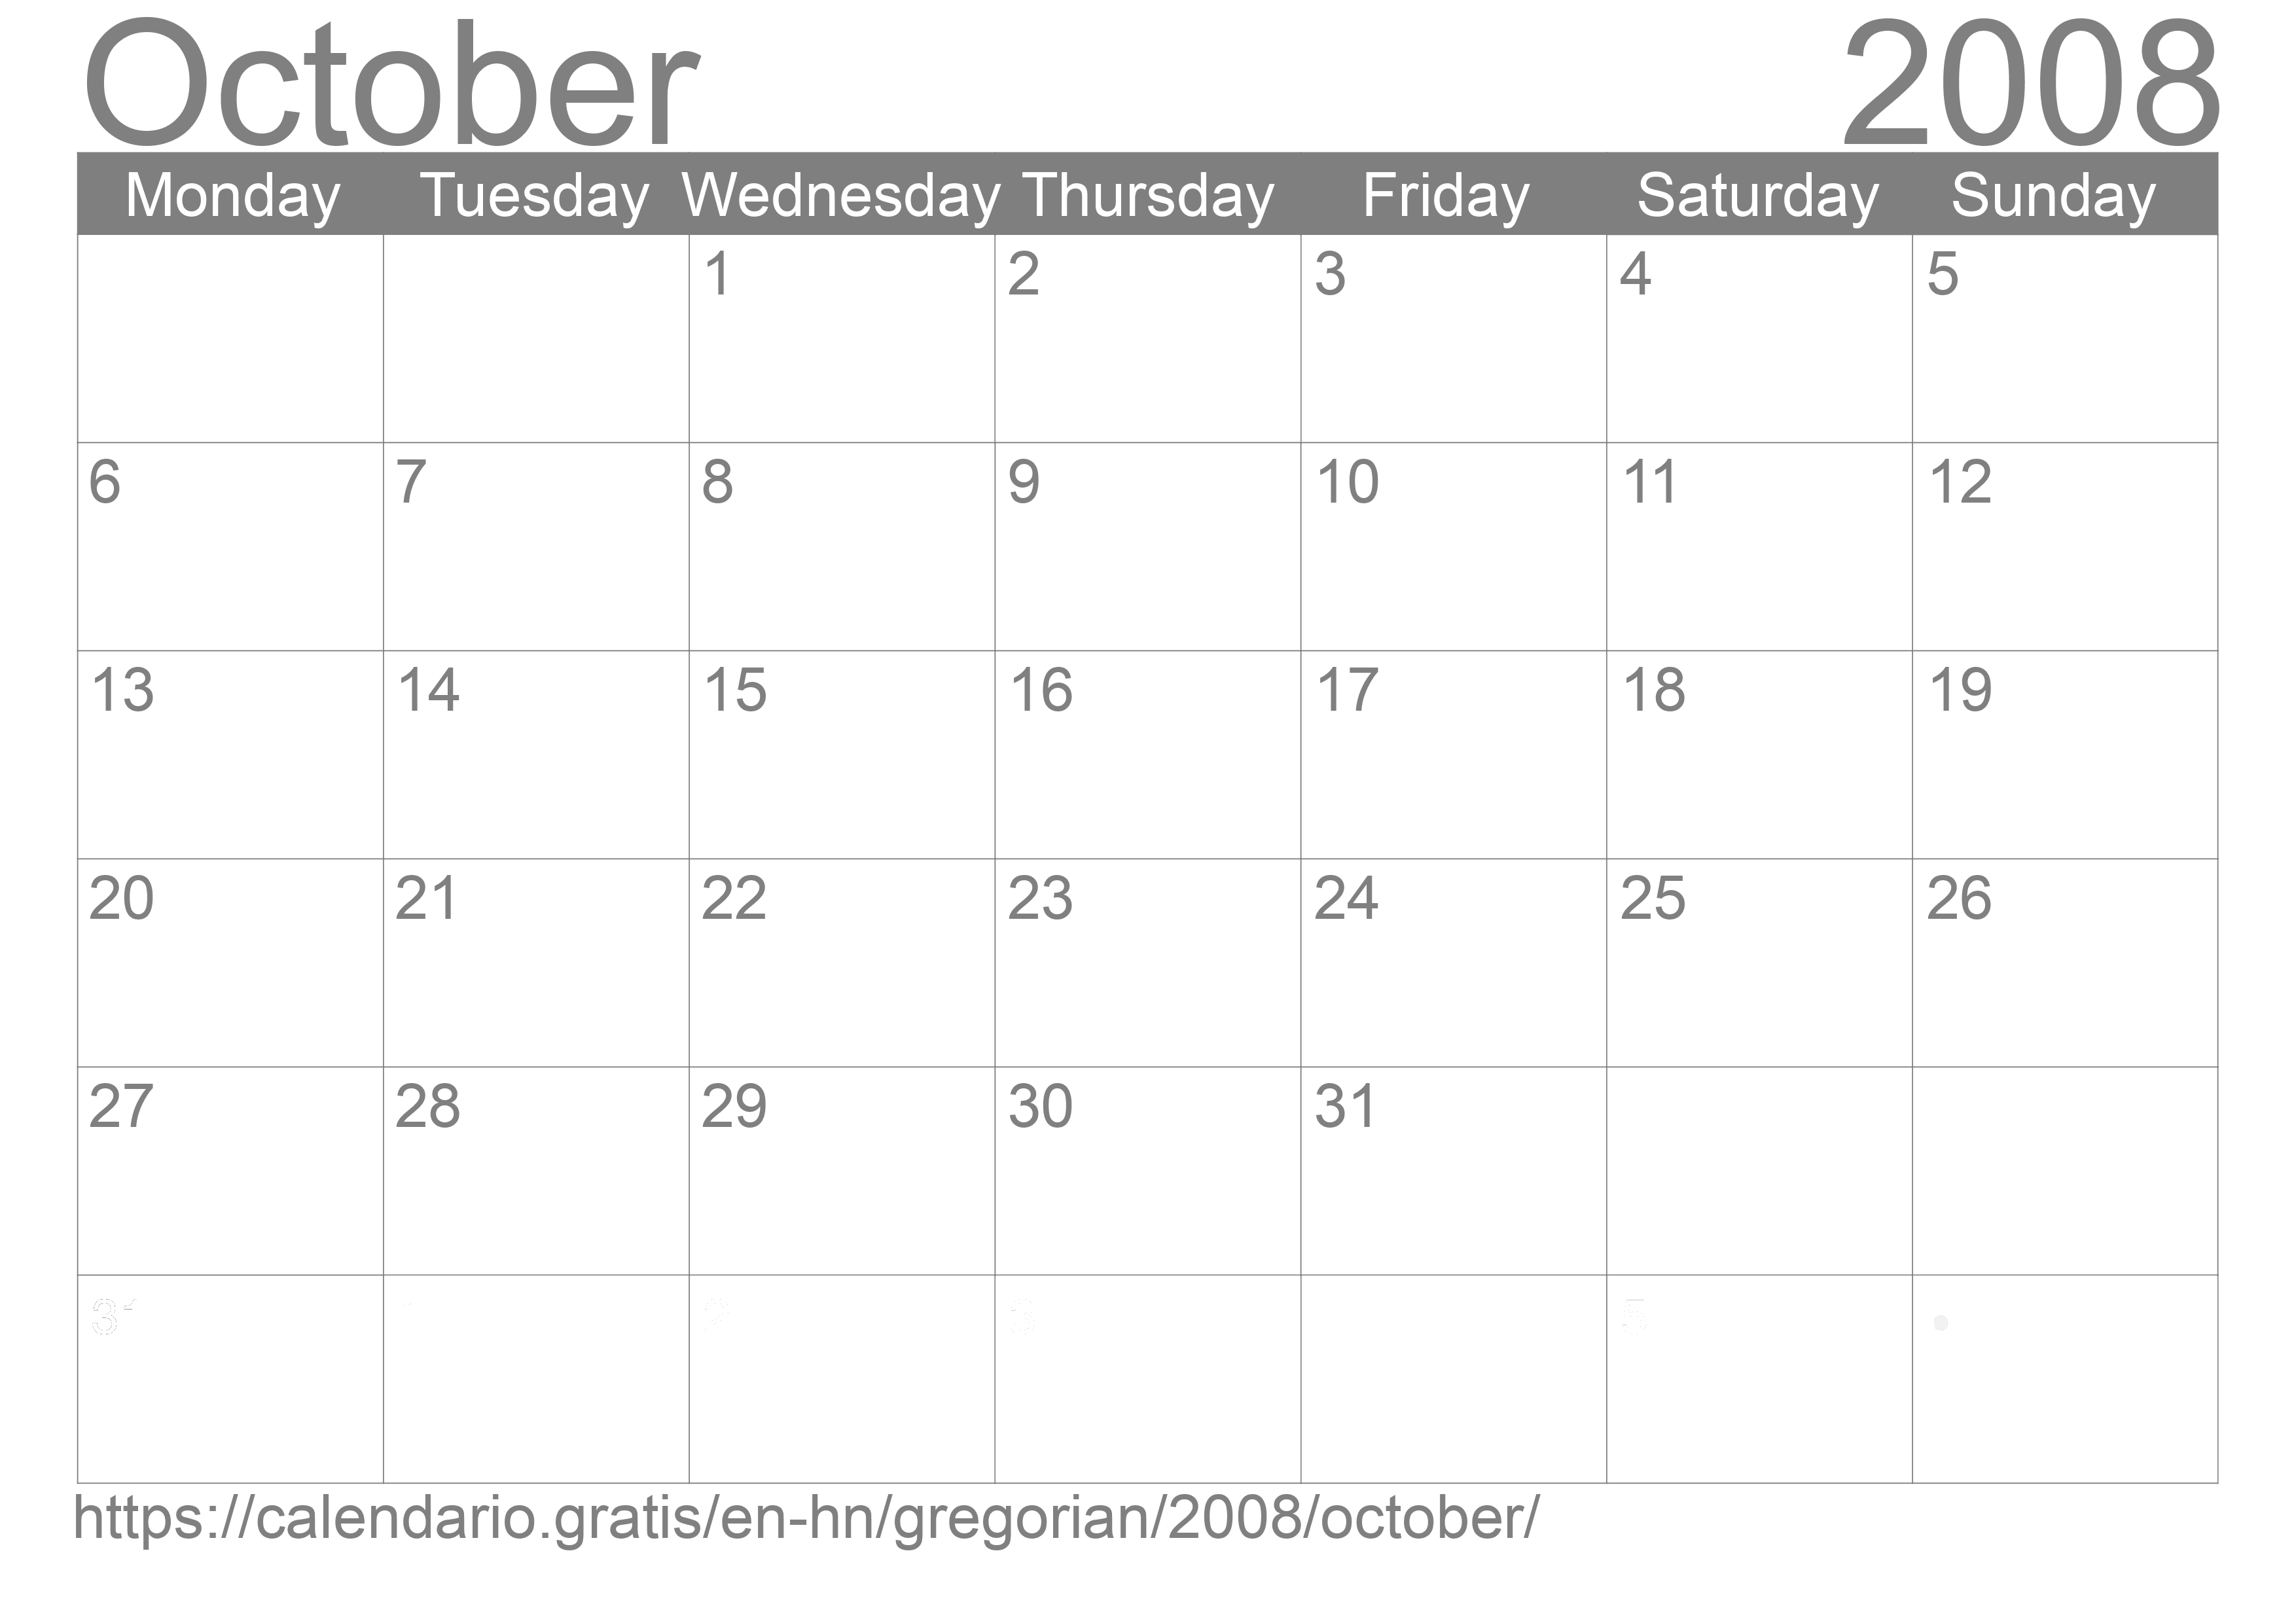 Calendar October 2008 to print